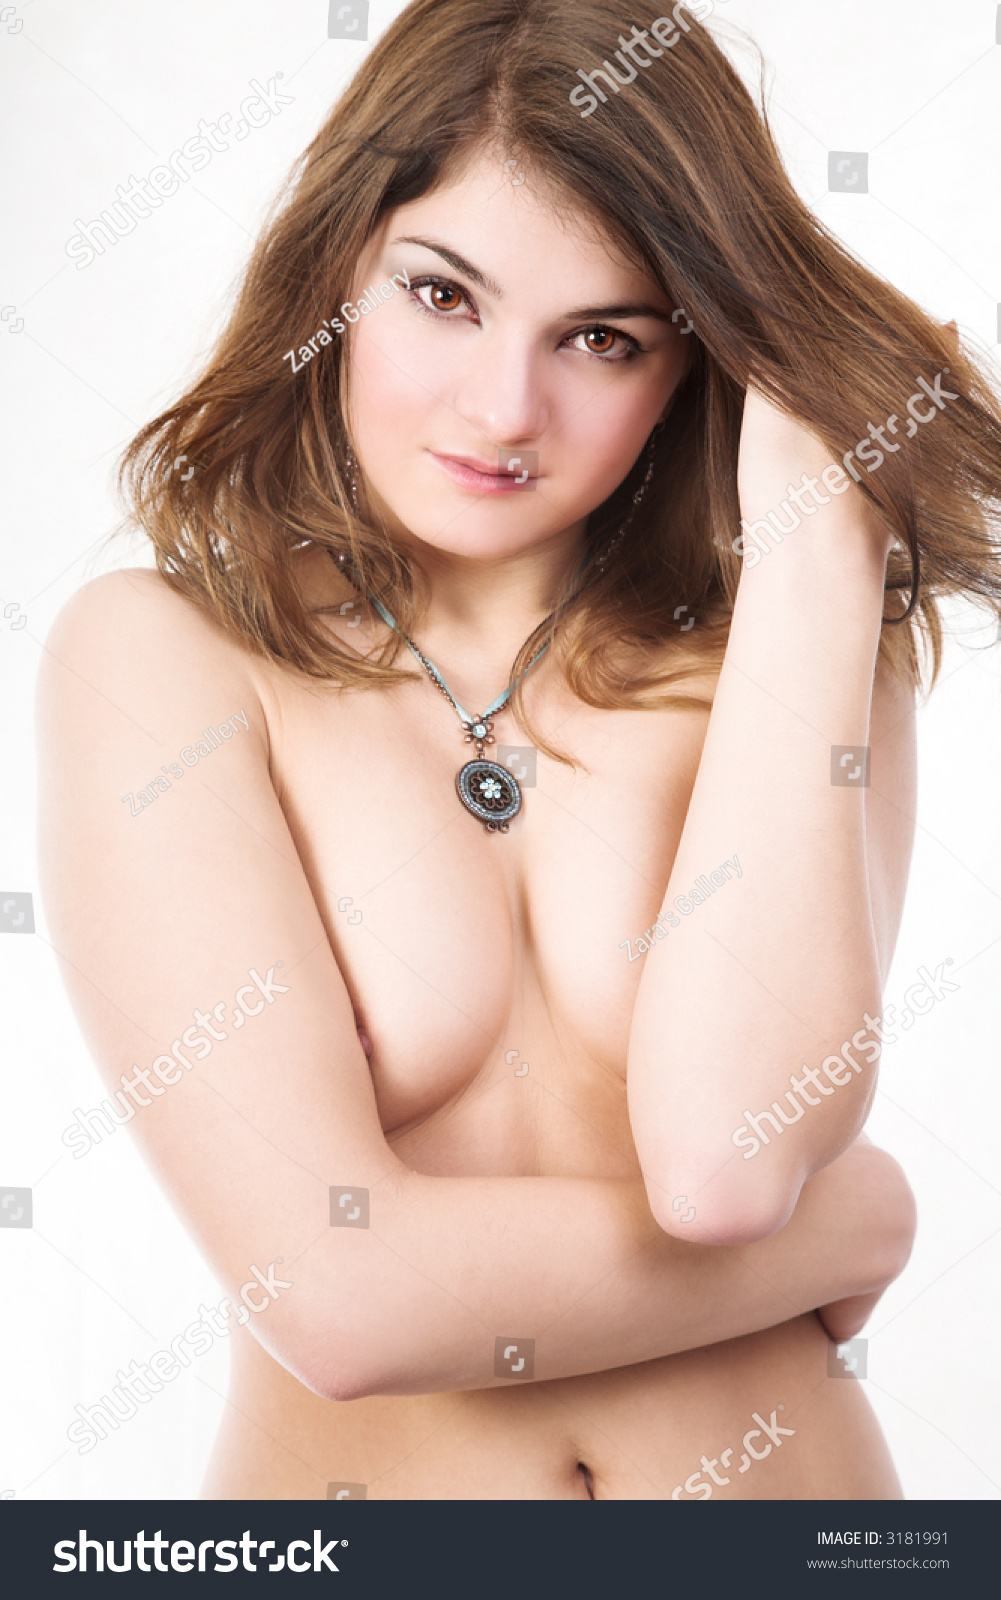 Pretty Nude Women Pics